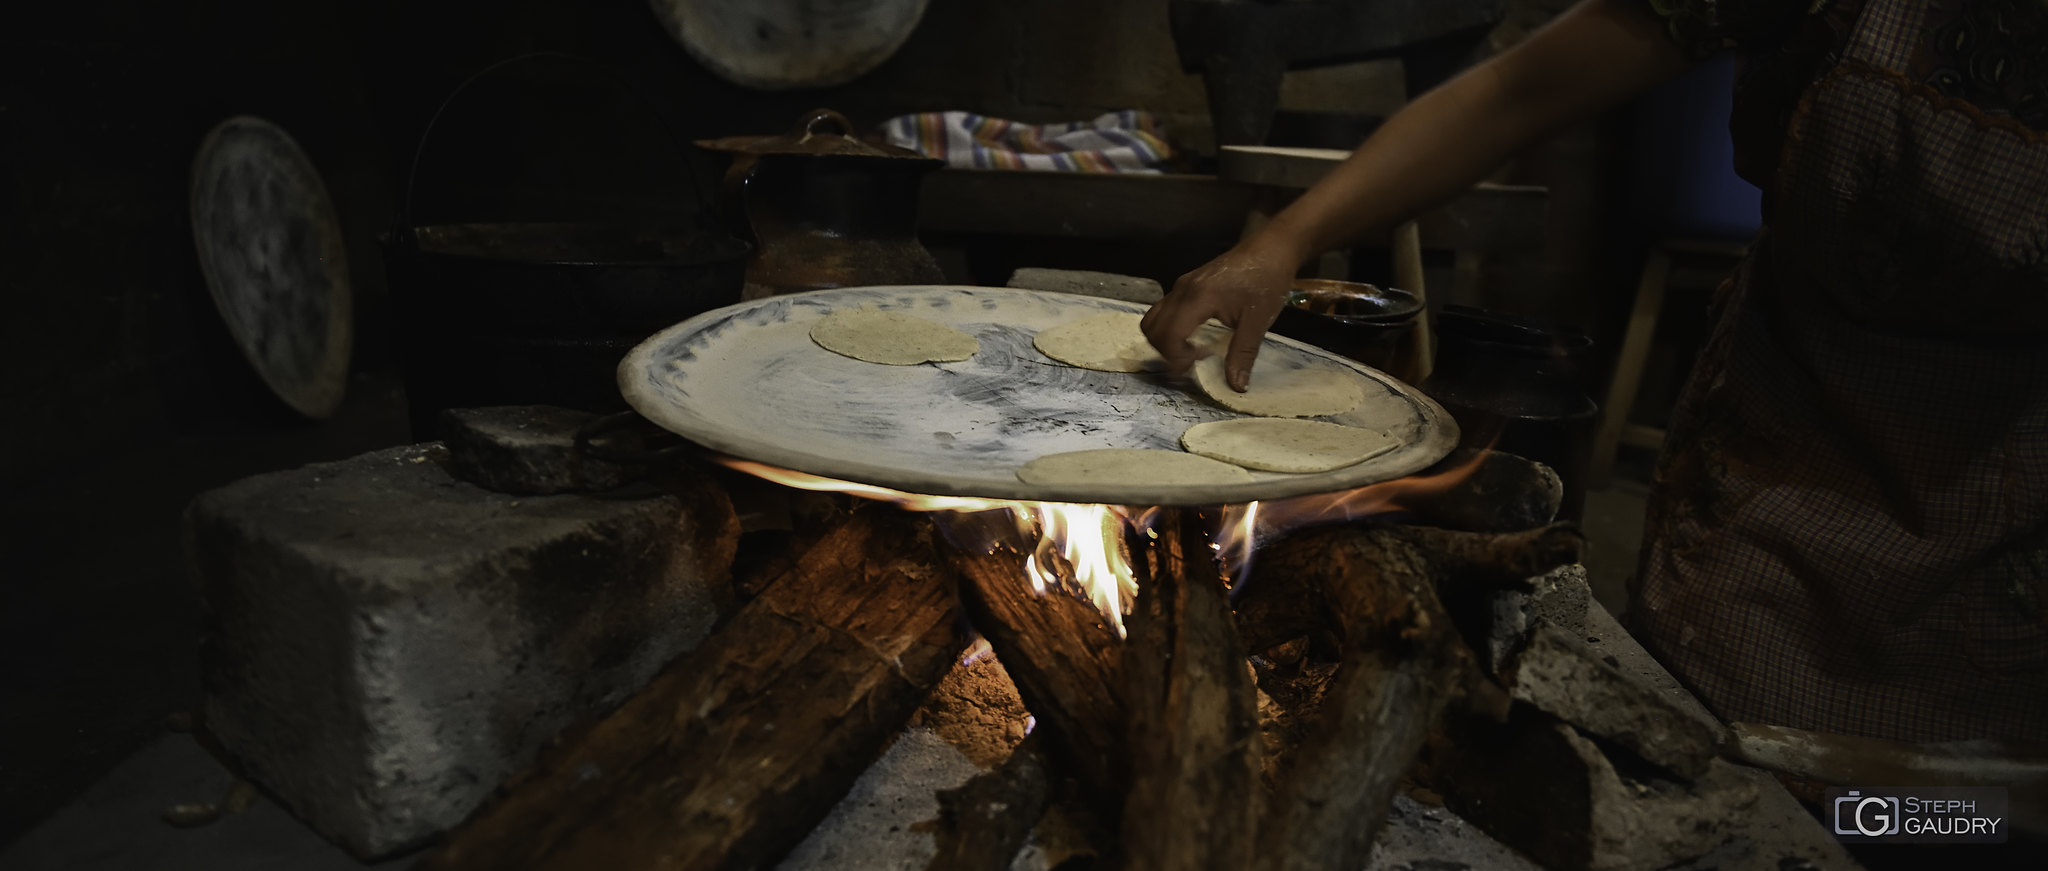 Tacos mexicanos - cocinar a fuego de leña [Klik om de diavoorstelling te starten]